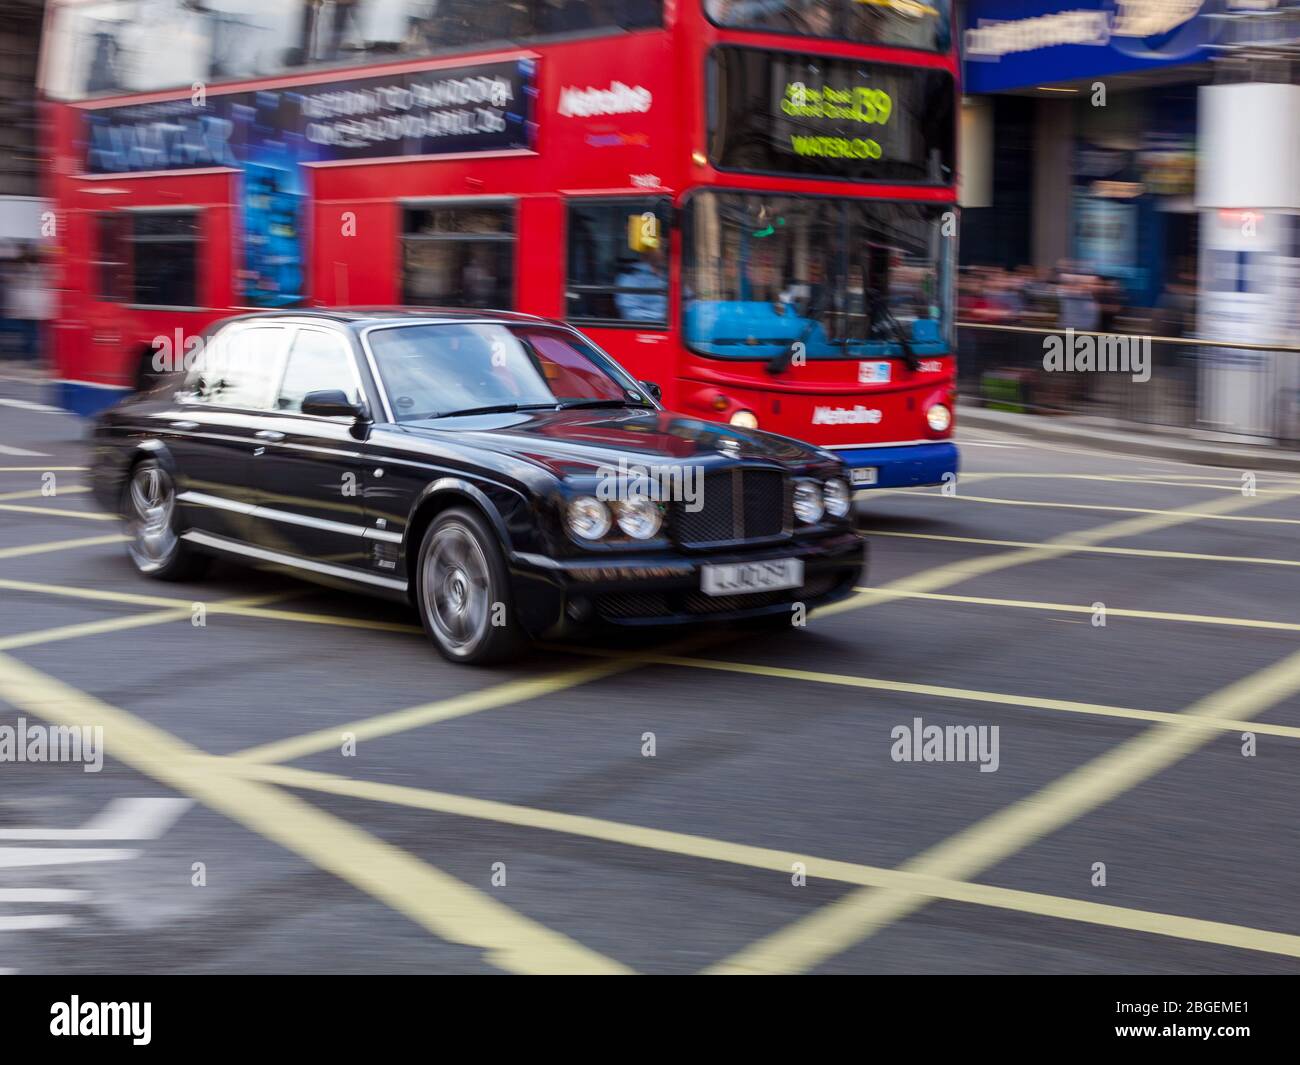 Rolls Royce et Red London bus cross Piccadilly Circus dans le quartier du West End de Londres. Richesse Londres / Londres. Flou de mouvement. Banque D'Images